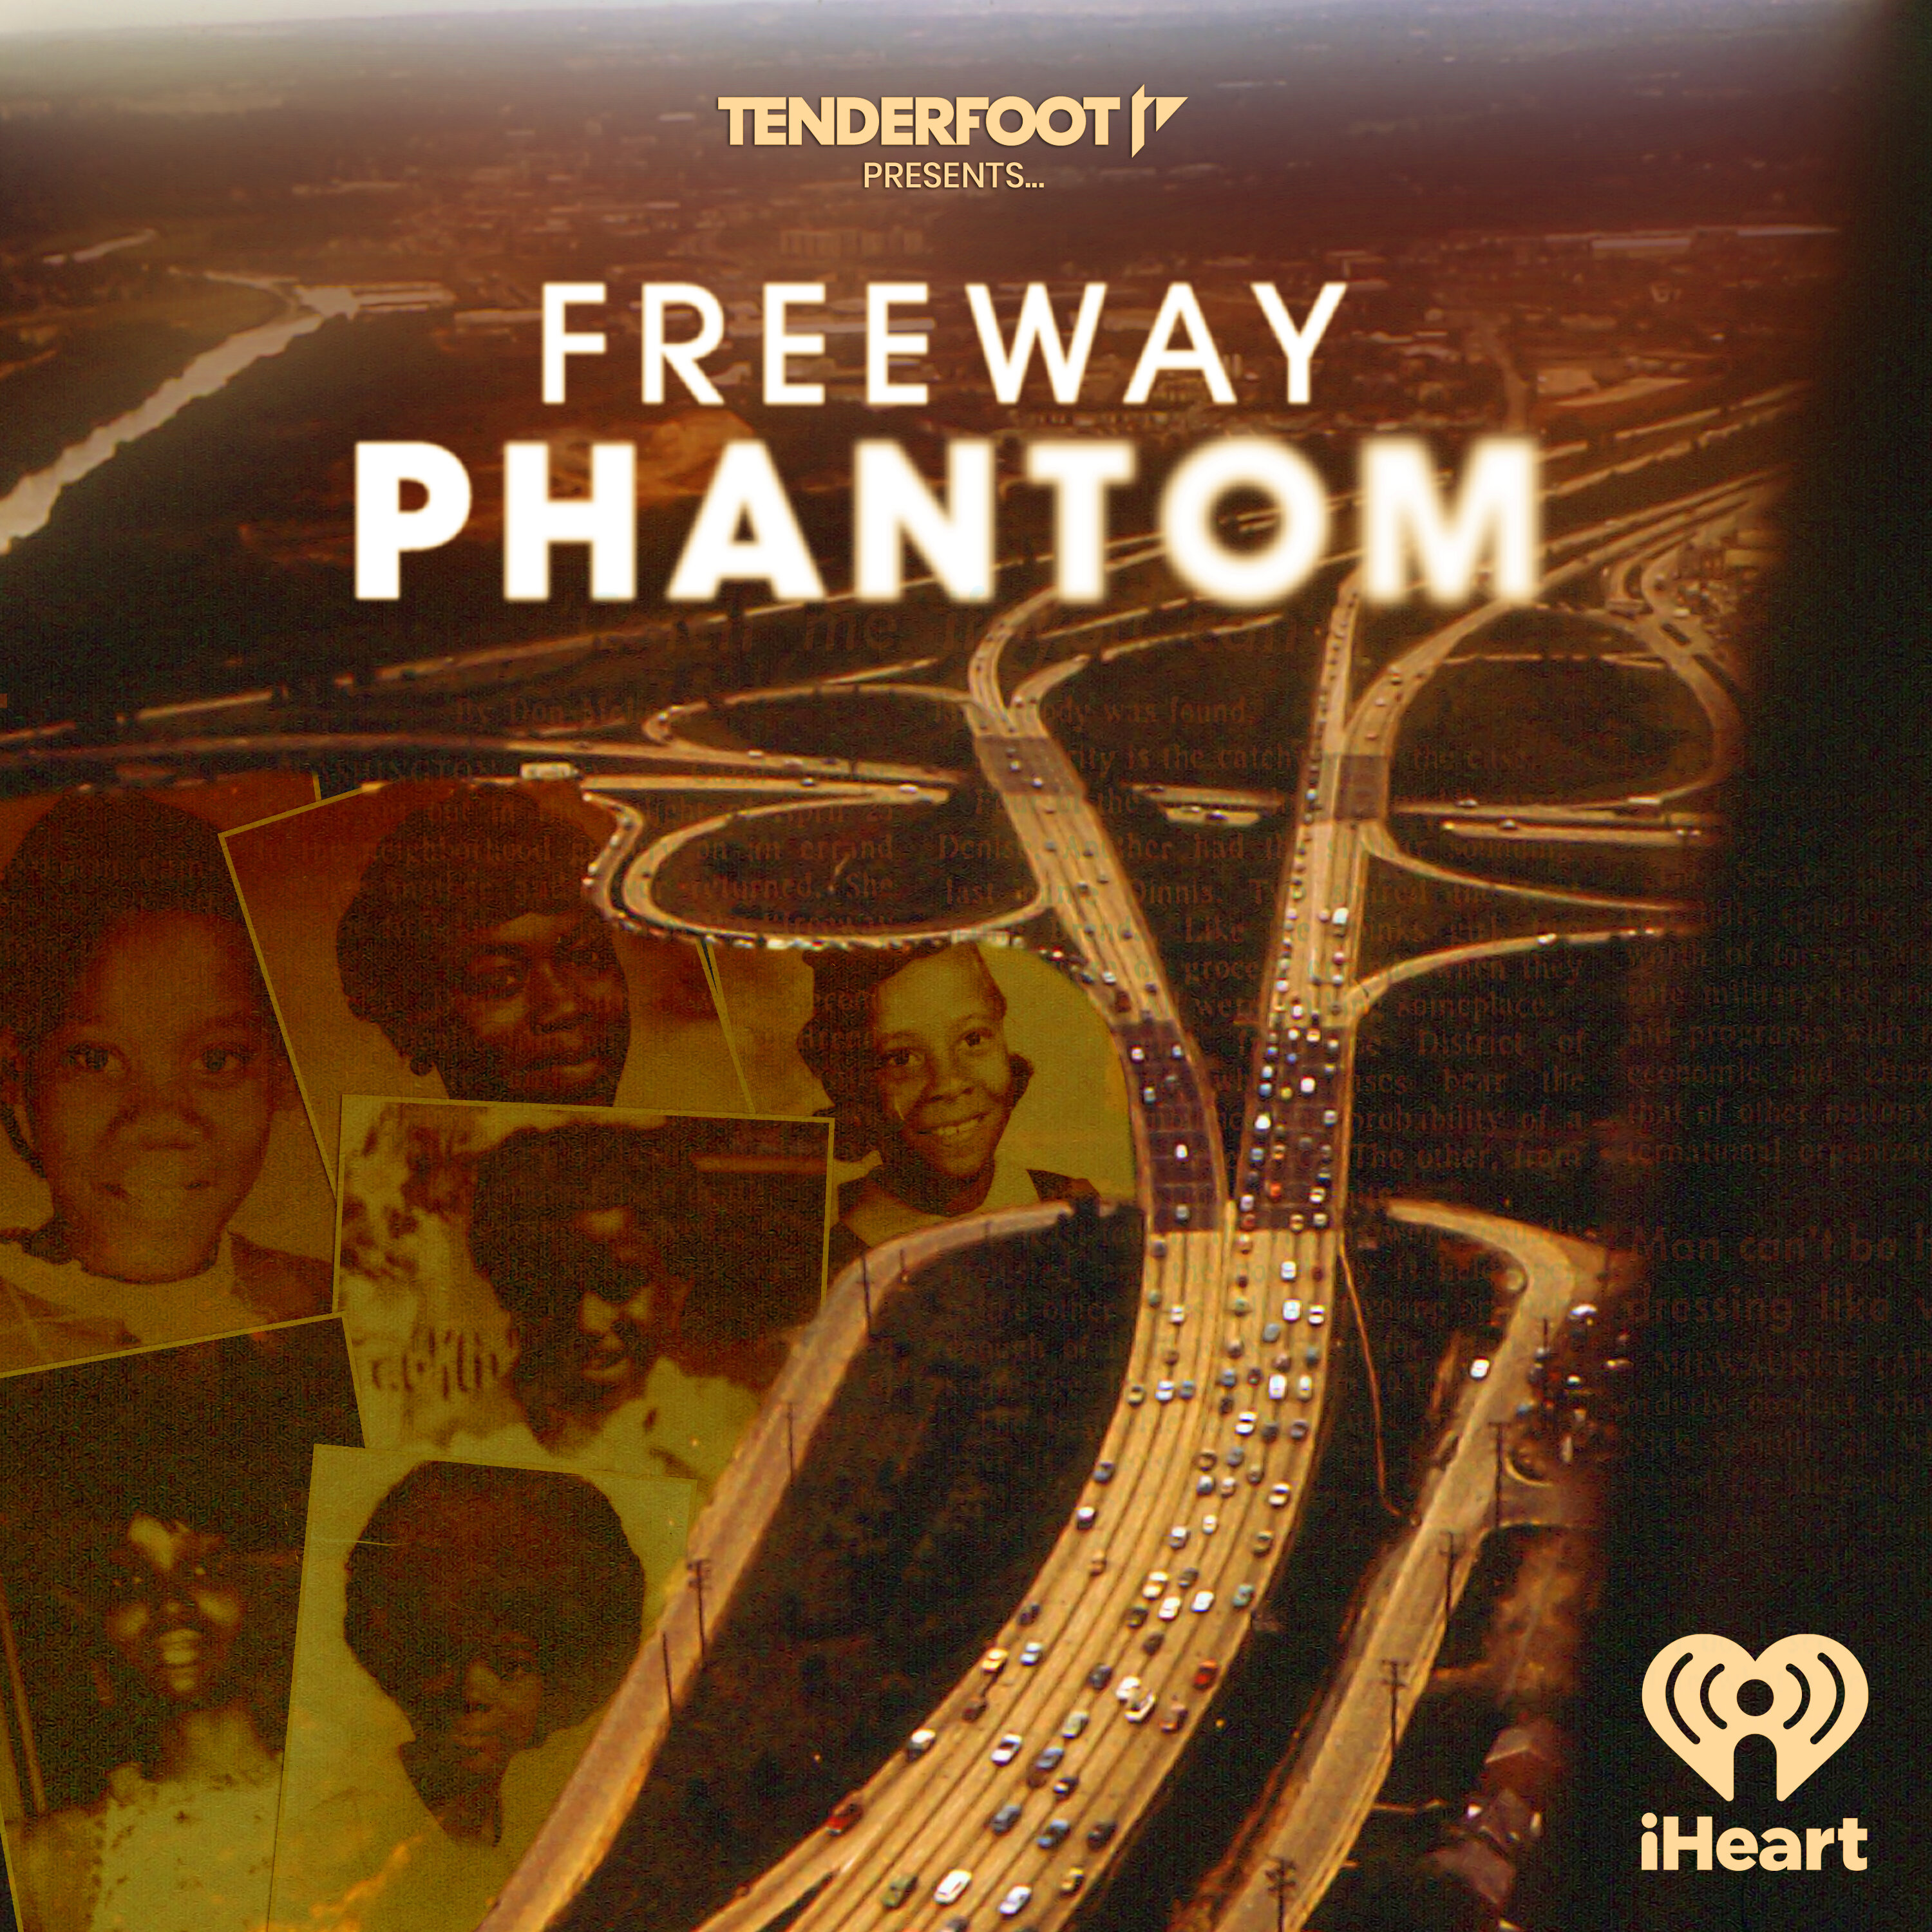 Freeway Phantom podcast show image